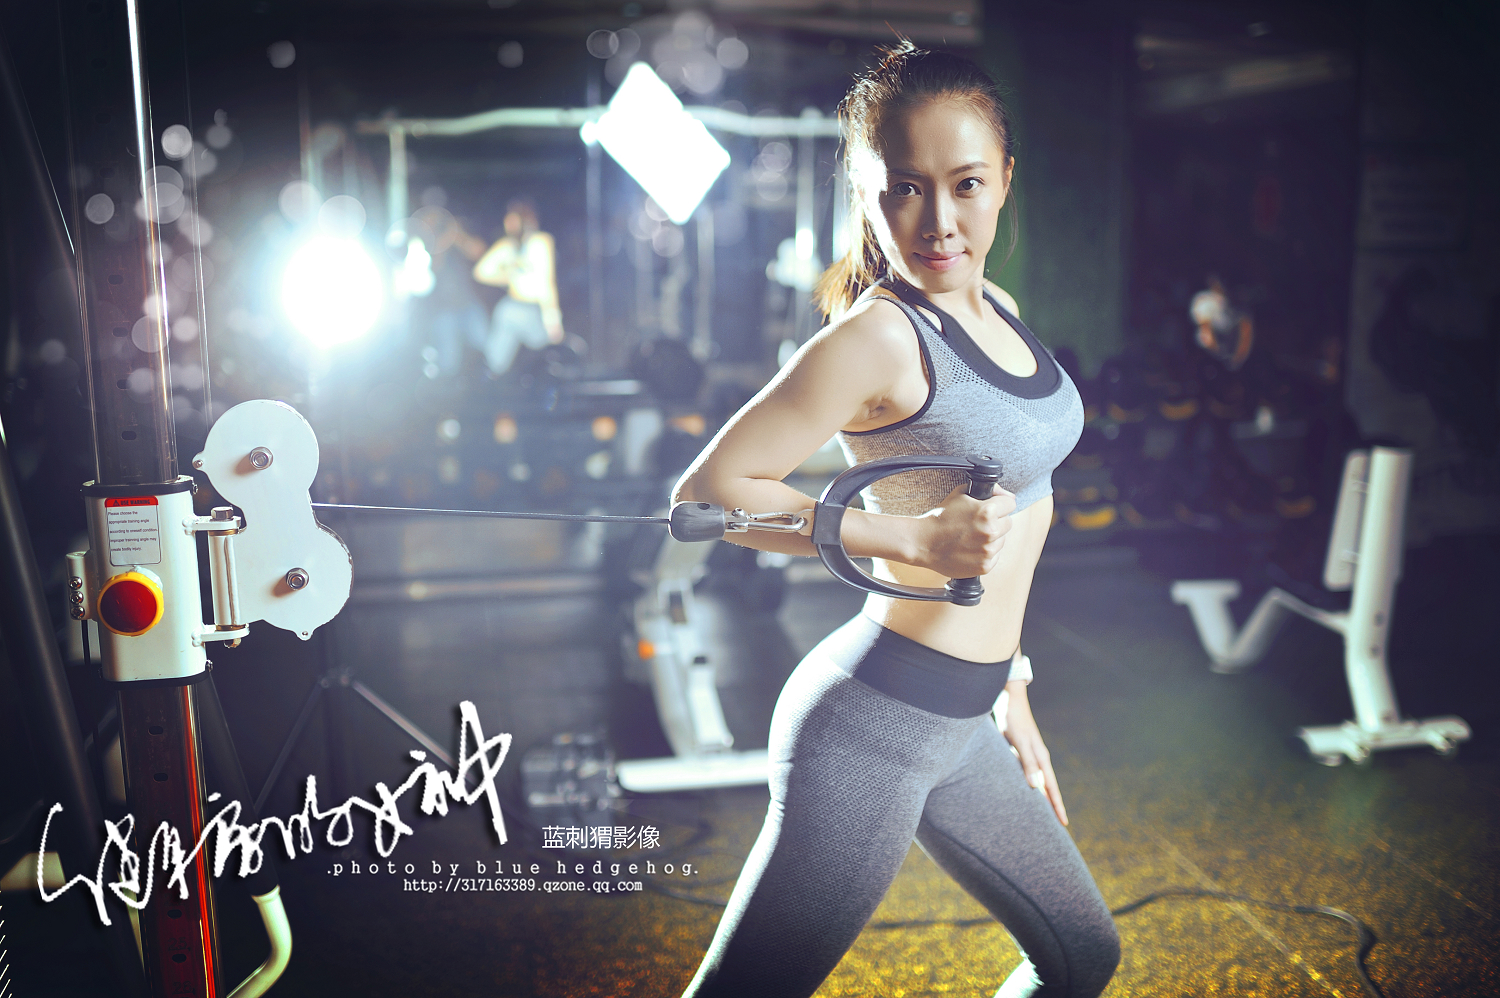 原创 微胖女神最有型，爱健身的韩国肉系美女，几乎每天都在运动！ - NOW健身-FIT|fit健身|fitness|fitapp|FIT助手 ...